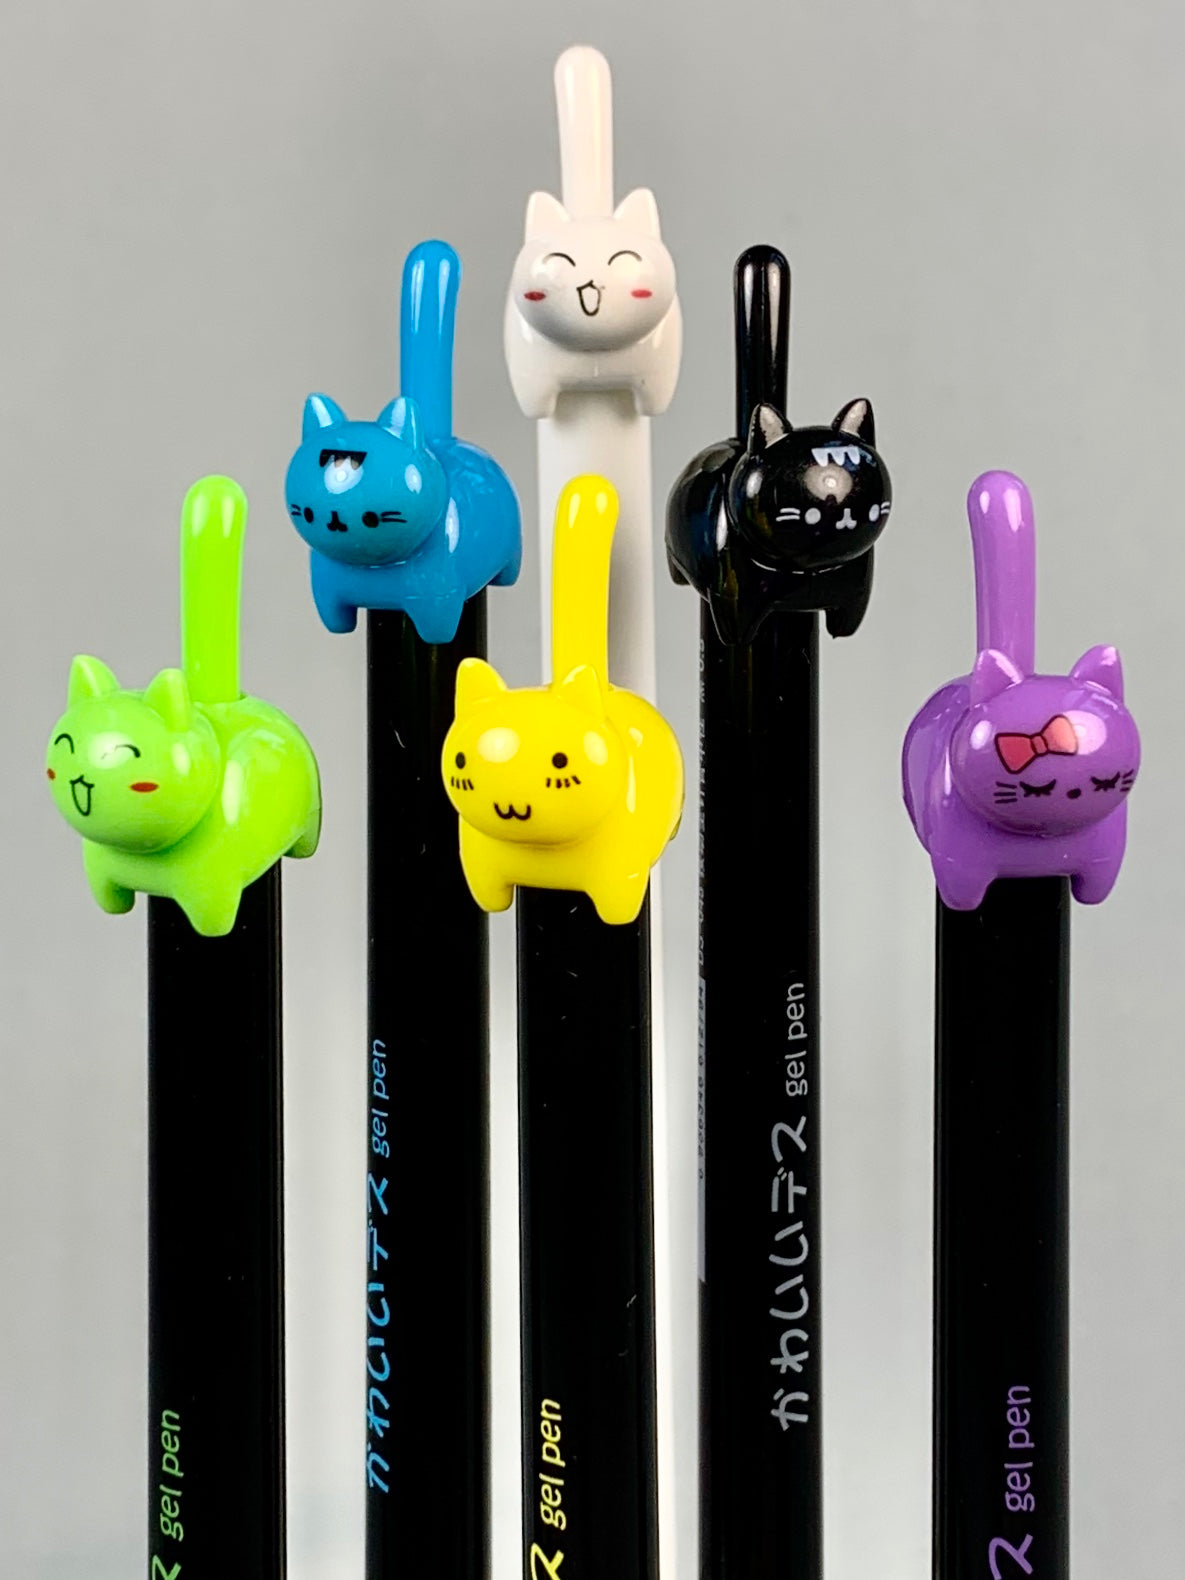 Retractable Cat Gel Pen - Odd Nodd Art Supply